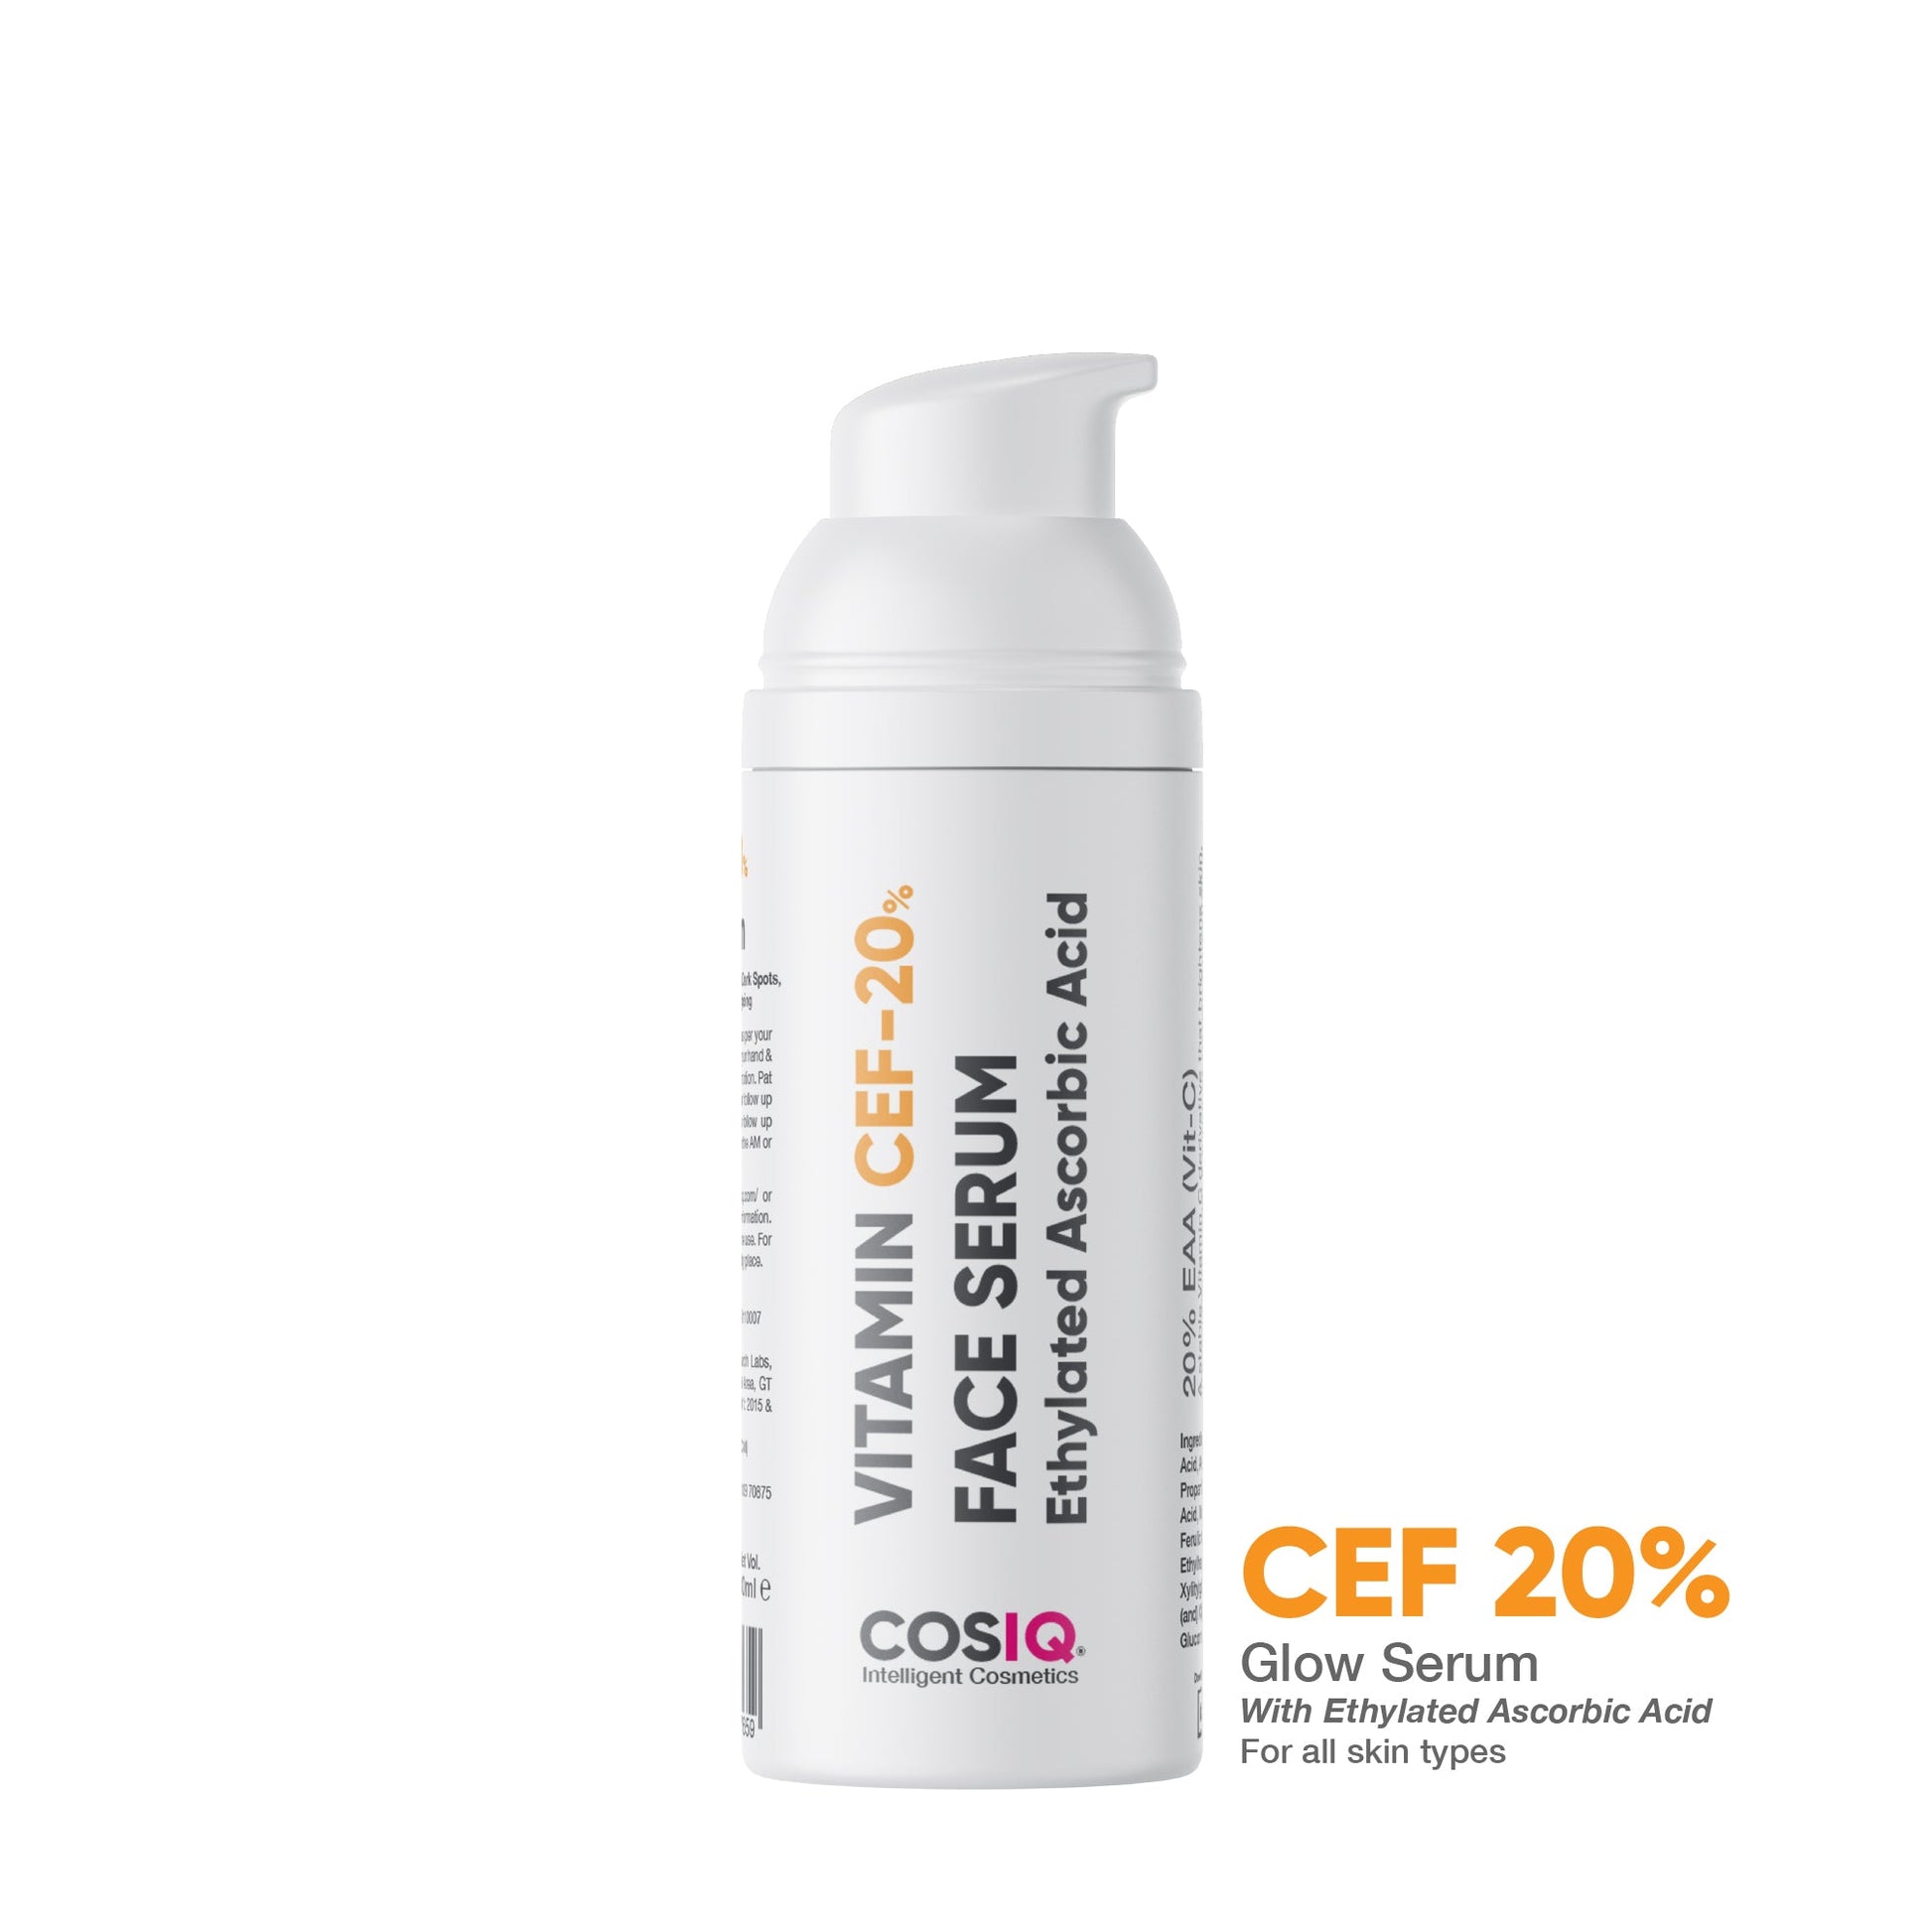 Vitamin CEF-20% Face Serum 30ml - CosIQ